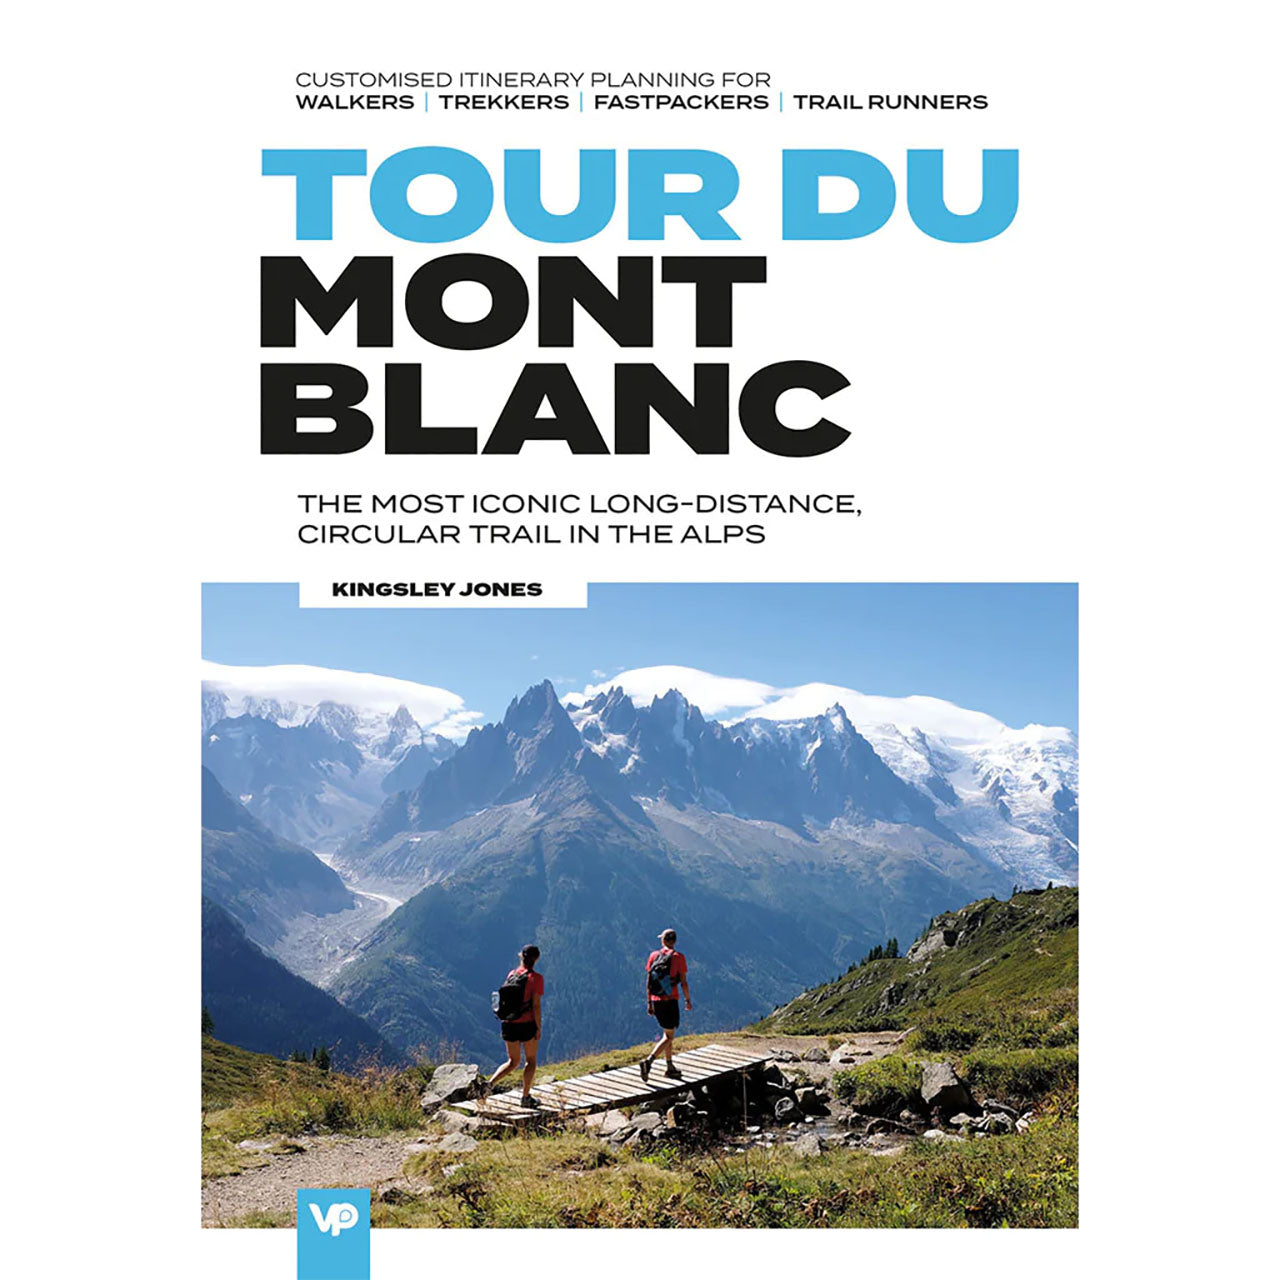 Tour Du Mont Blanc by Kingsley Jones